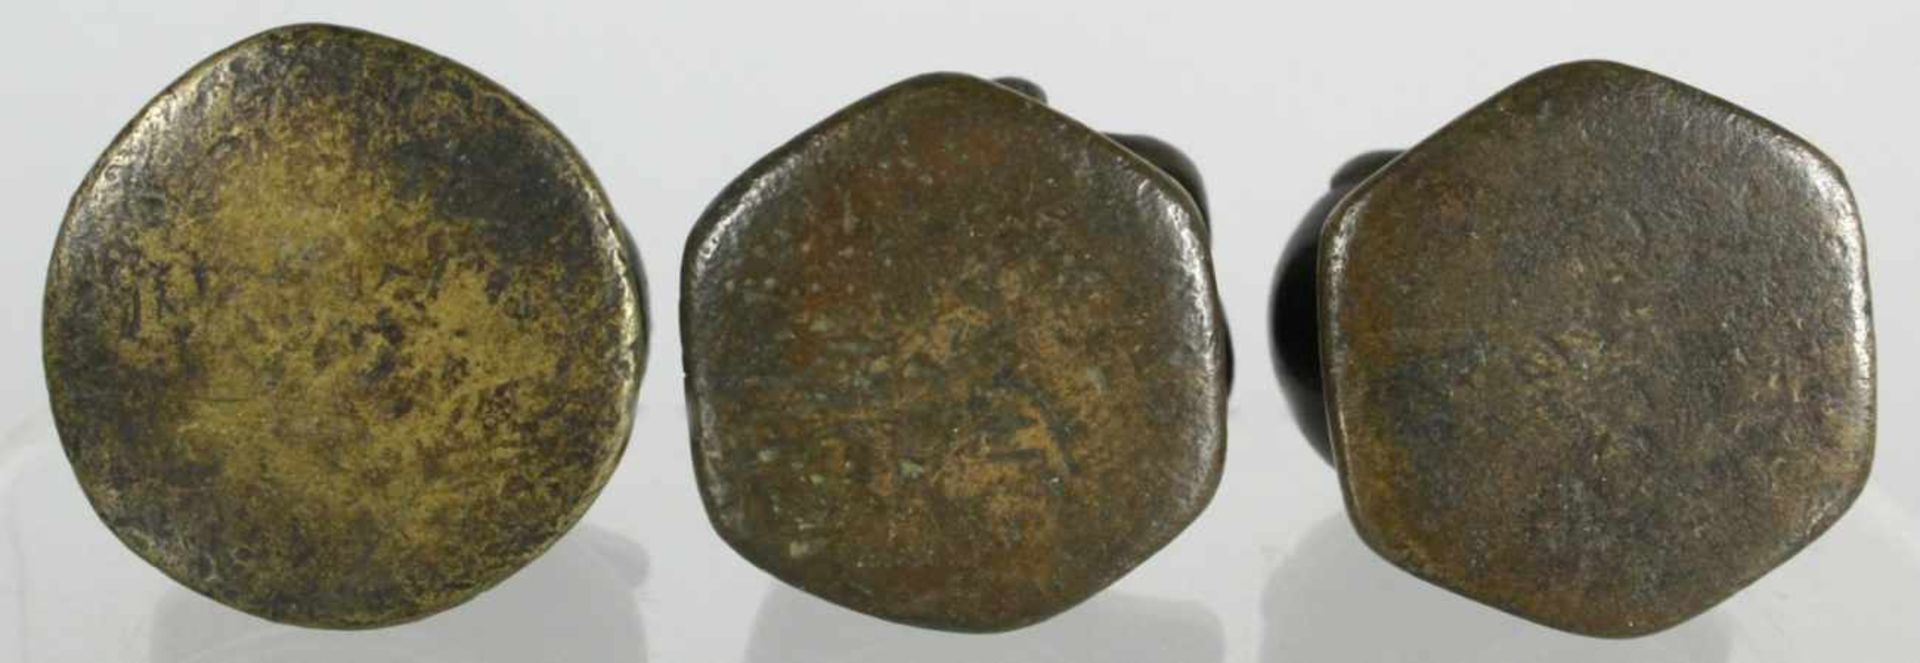 Drei Bronze-Opiumgewichte, Burma, 18./19. Jh., gearbeitet in Form von Enten auf Sockel,dunkle A - Bild 2 aus 2